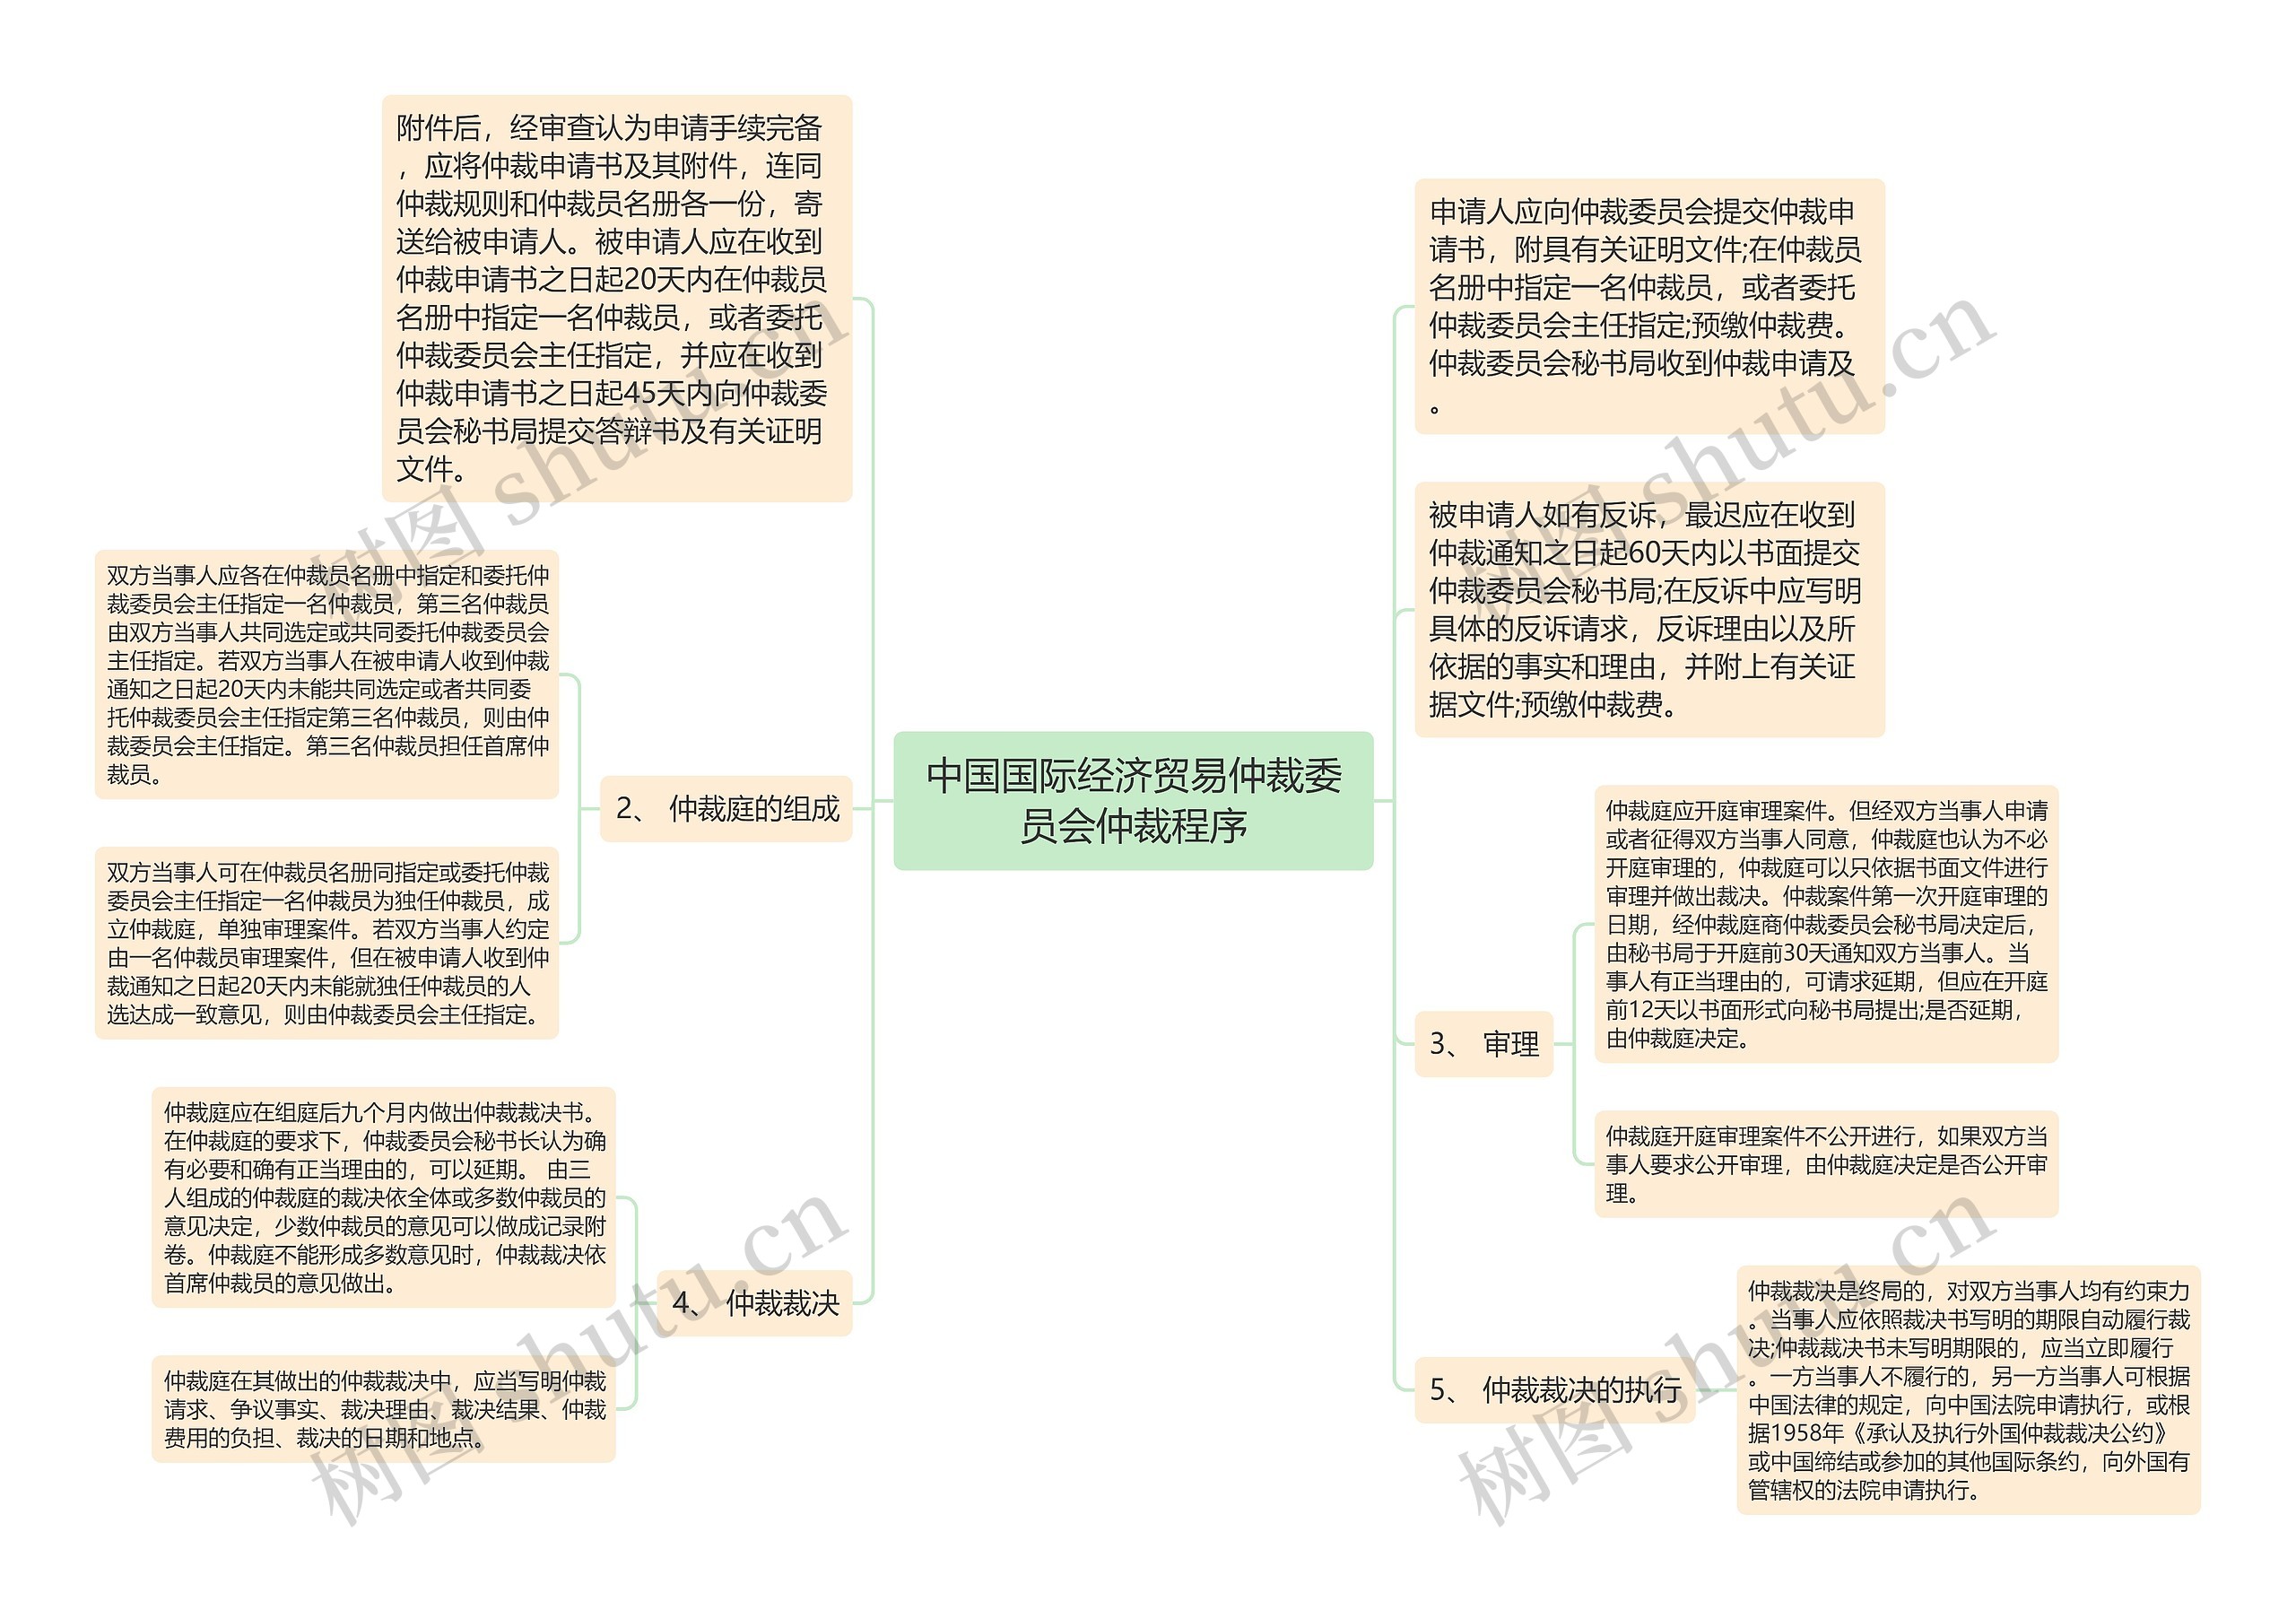 中国国际经济贸易仲裁委员会仲裁程序